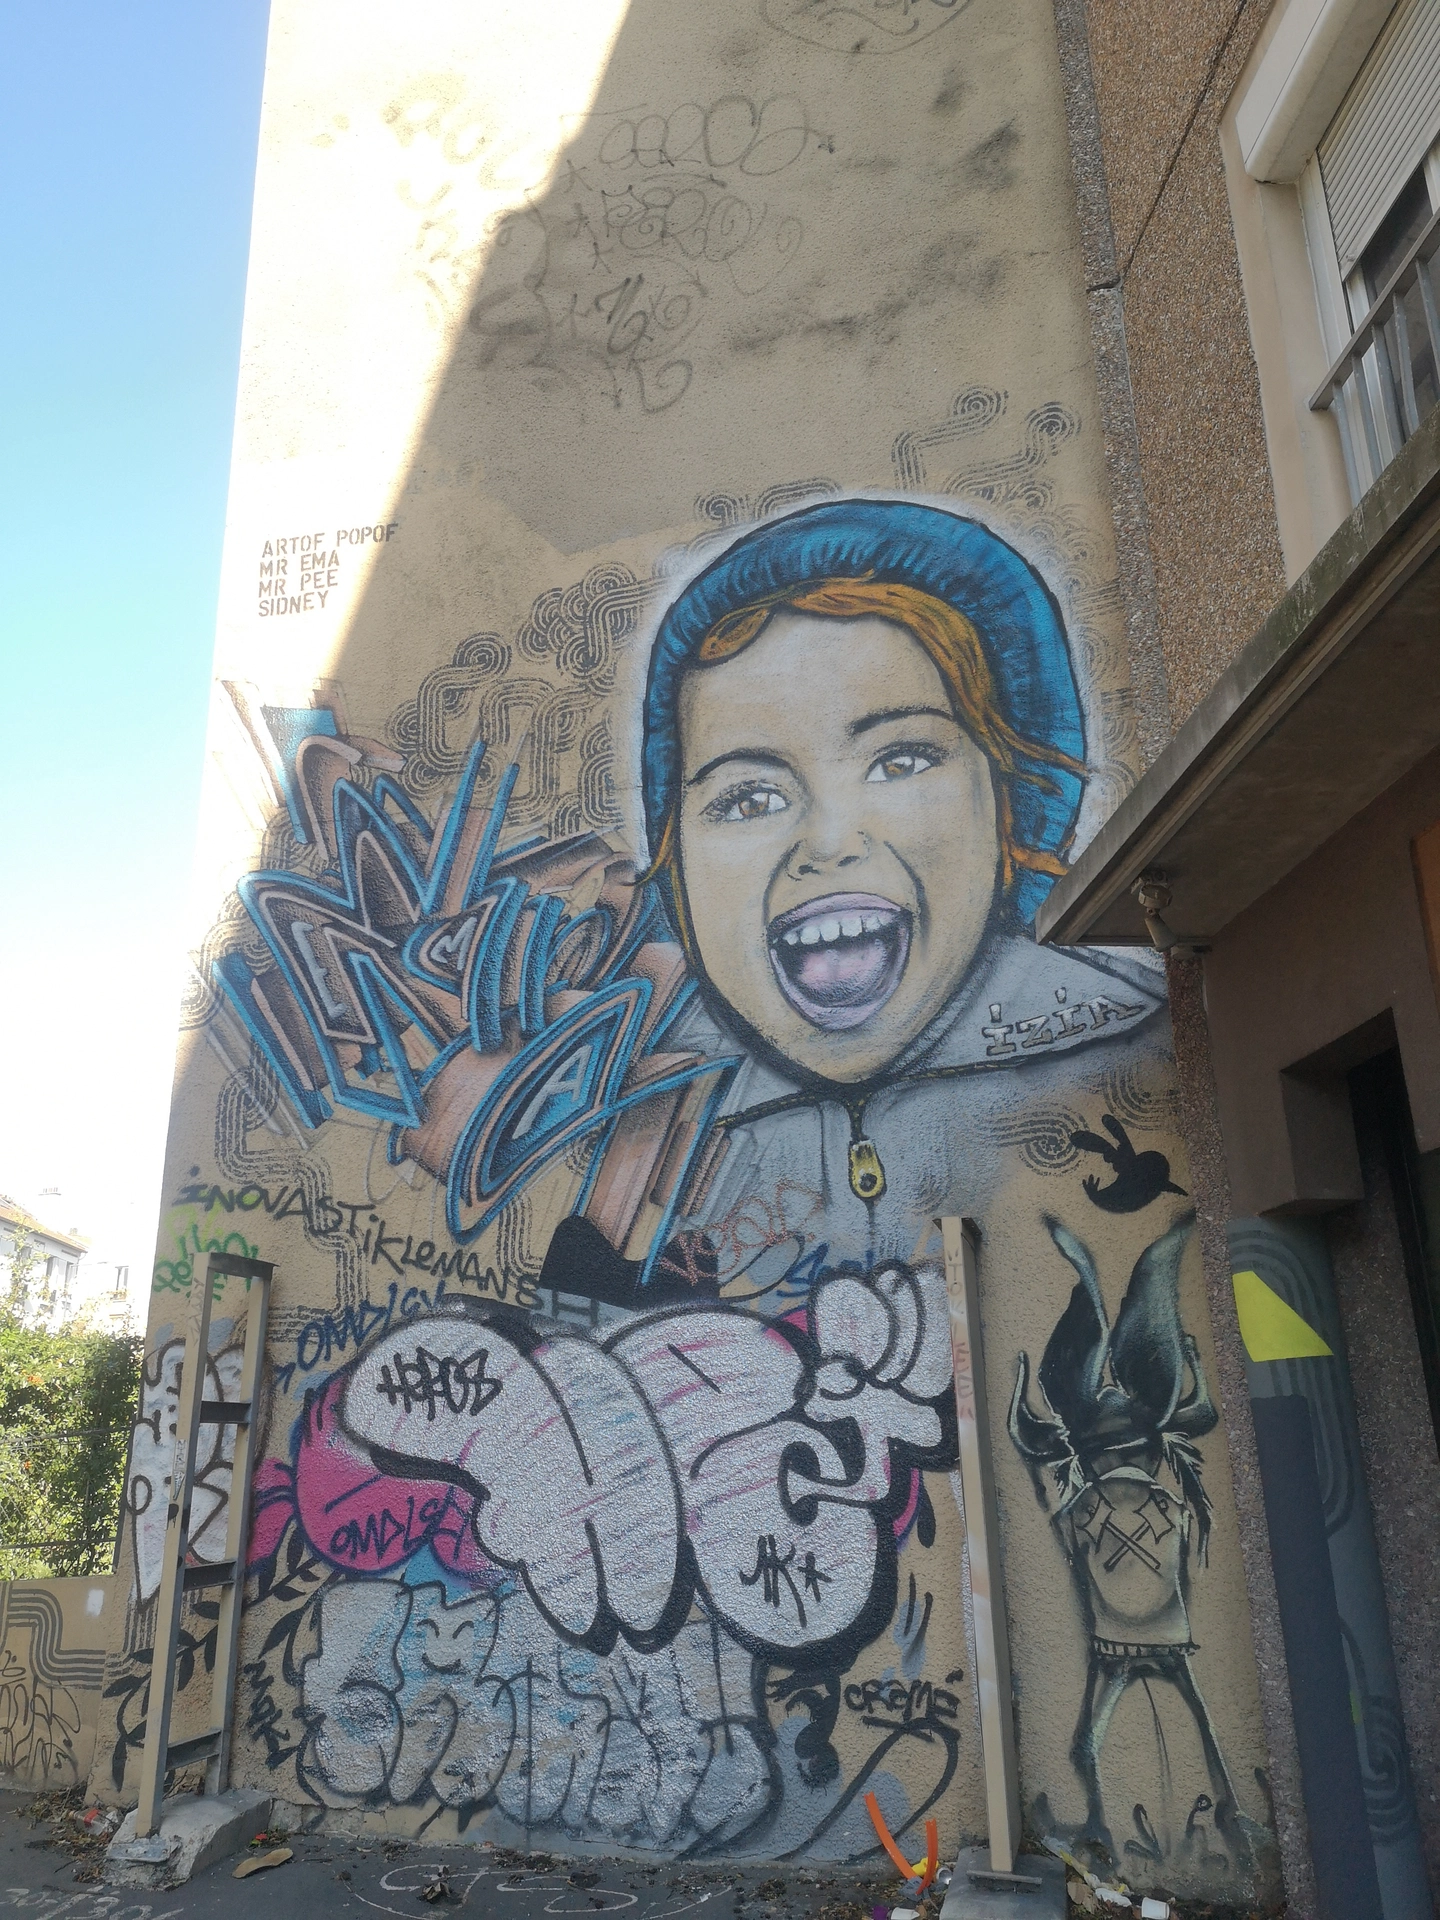 Oeuvre de Street Art réalisée par Artof popof à Montreuil